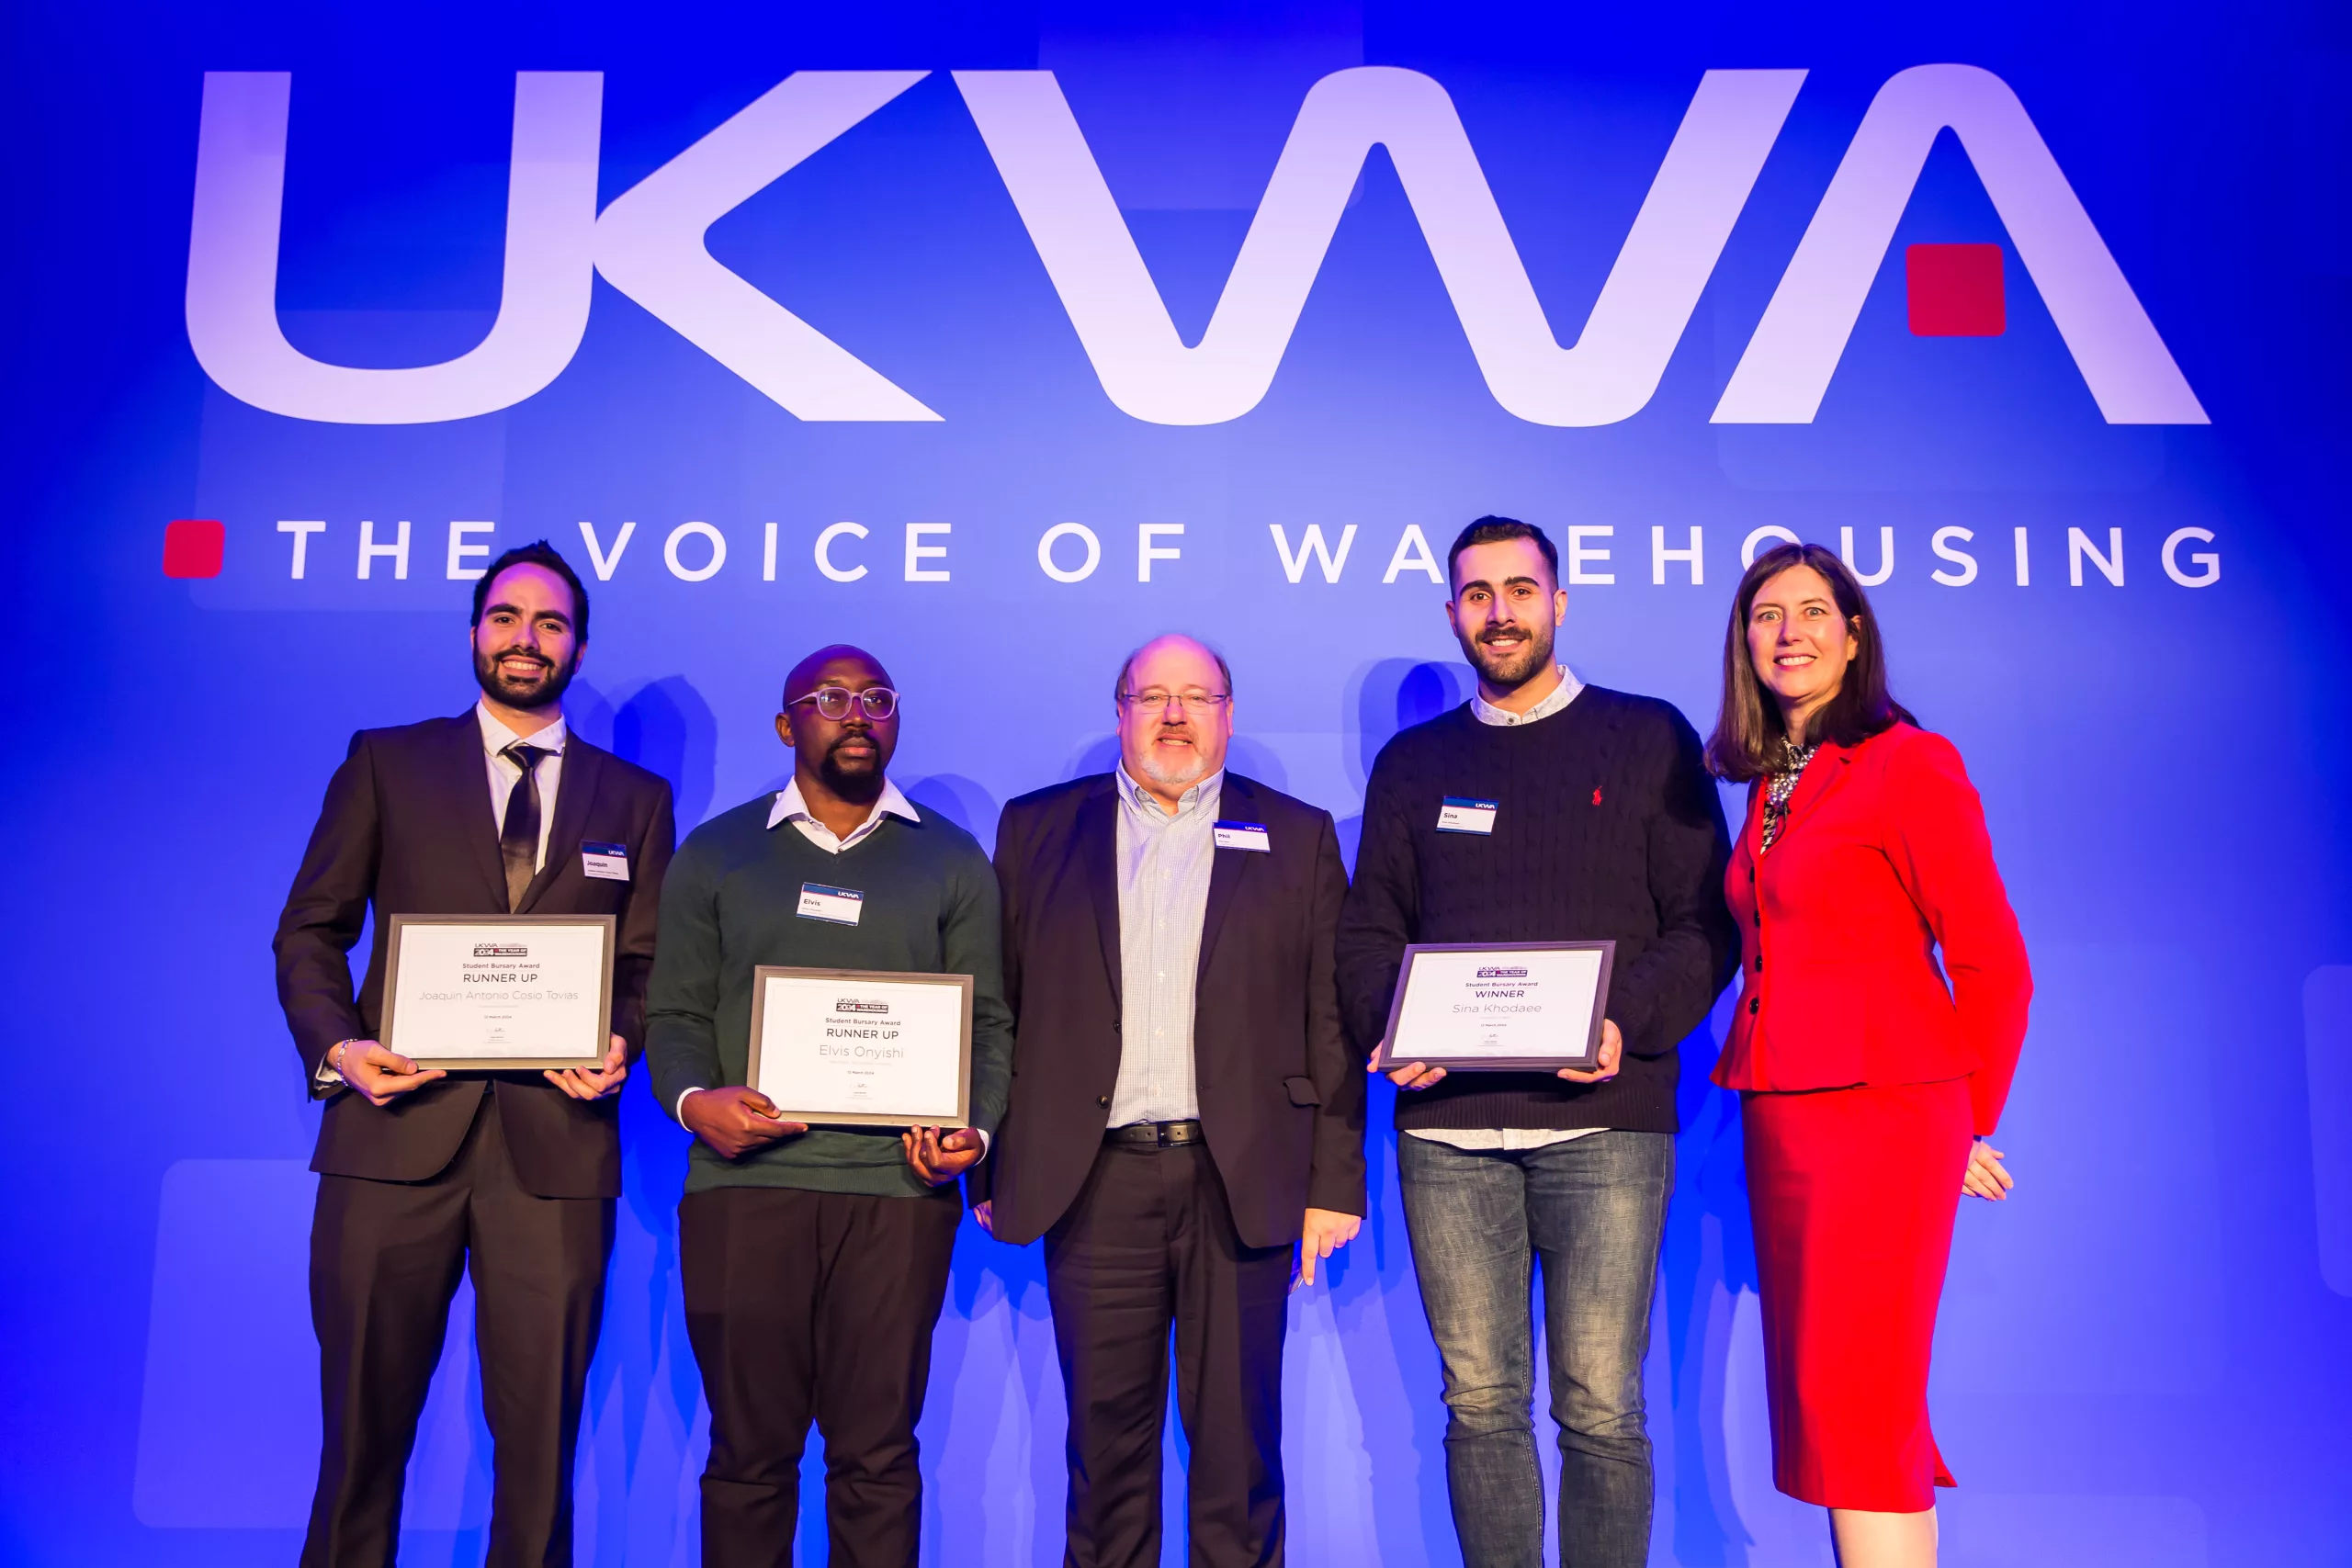 UKWA Year of Warehousing Student Bursary winner